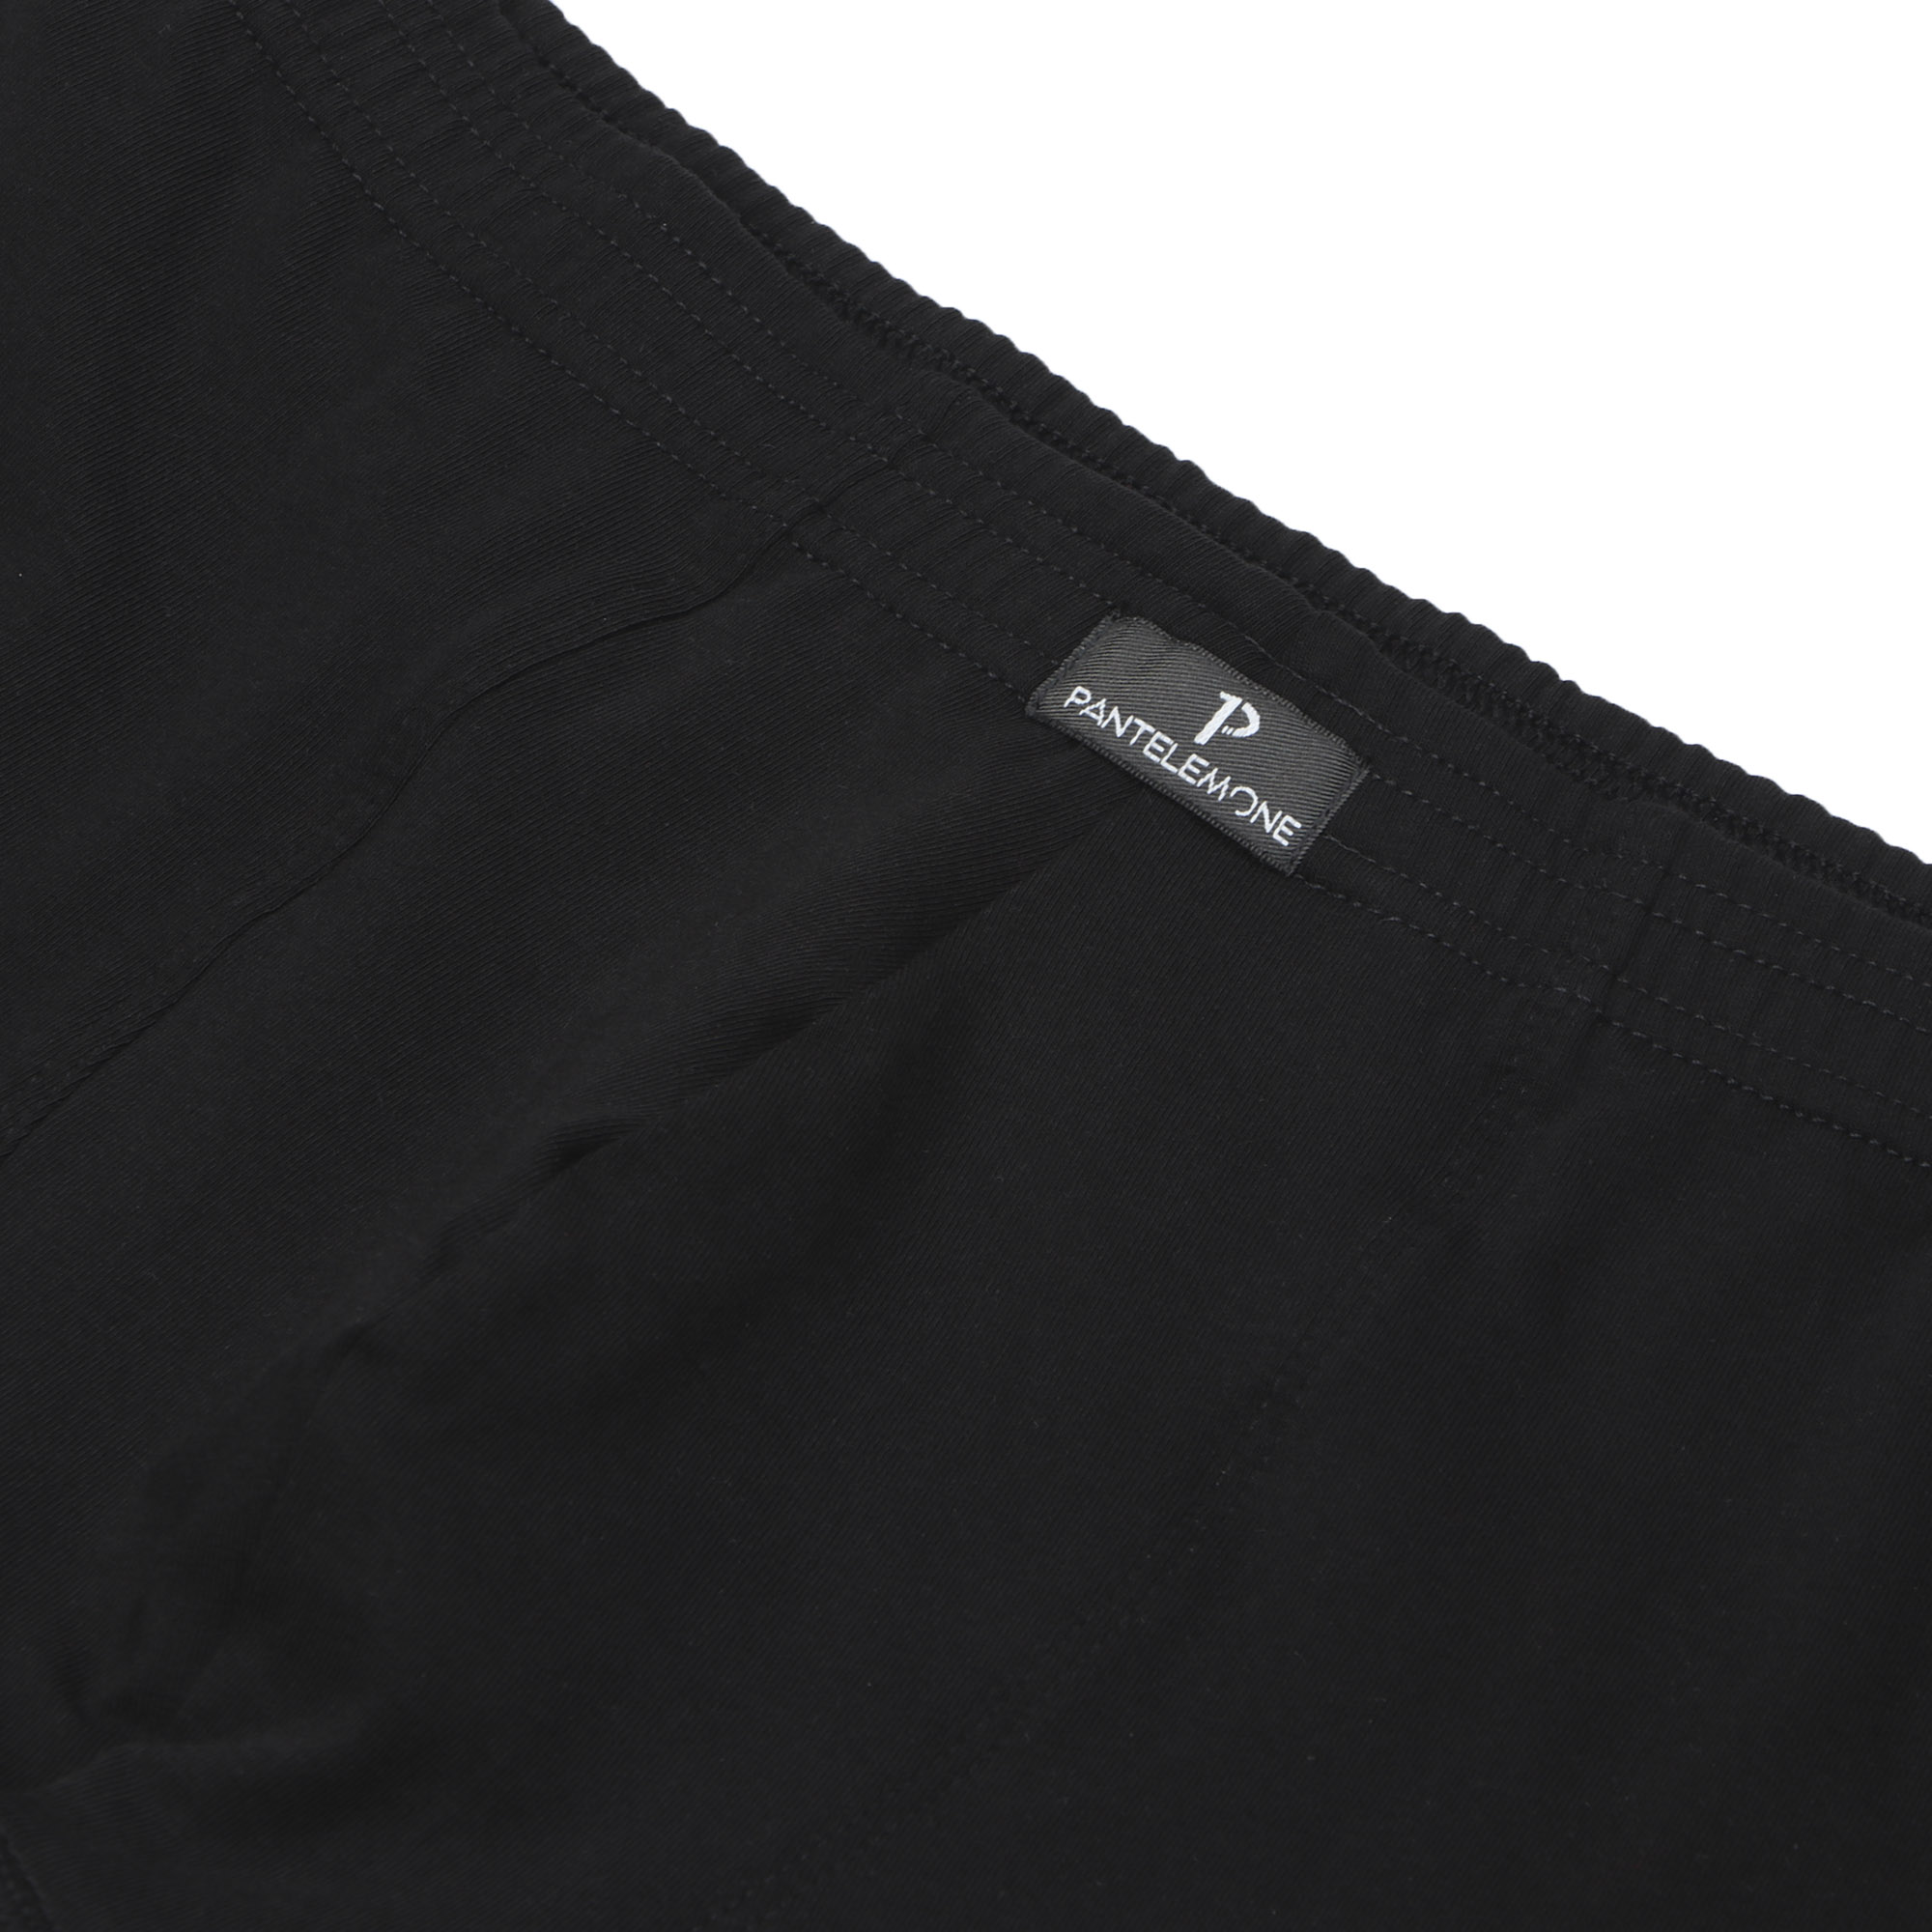 Трусы-шорты PMHL-139  Pantelemone 52 черные, цвет черный, размер 52 - фото 2